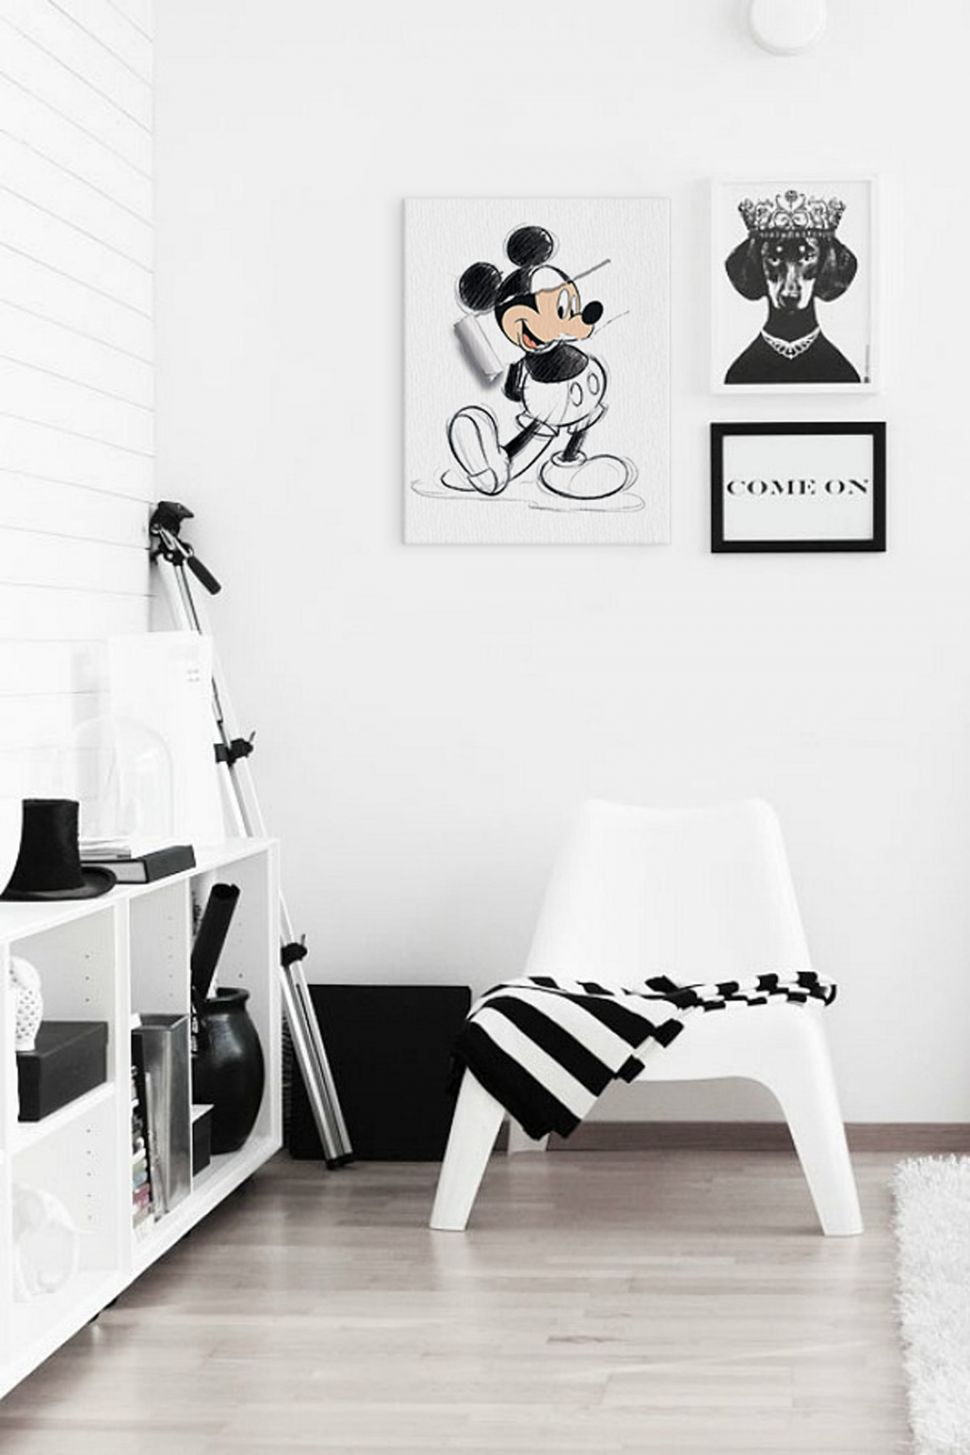 Obraz na płótnie z rysunkiem Myszki Miki powieszony w nowatorskim mieszkaniu na białej ścianie